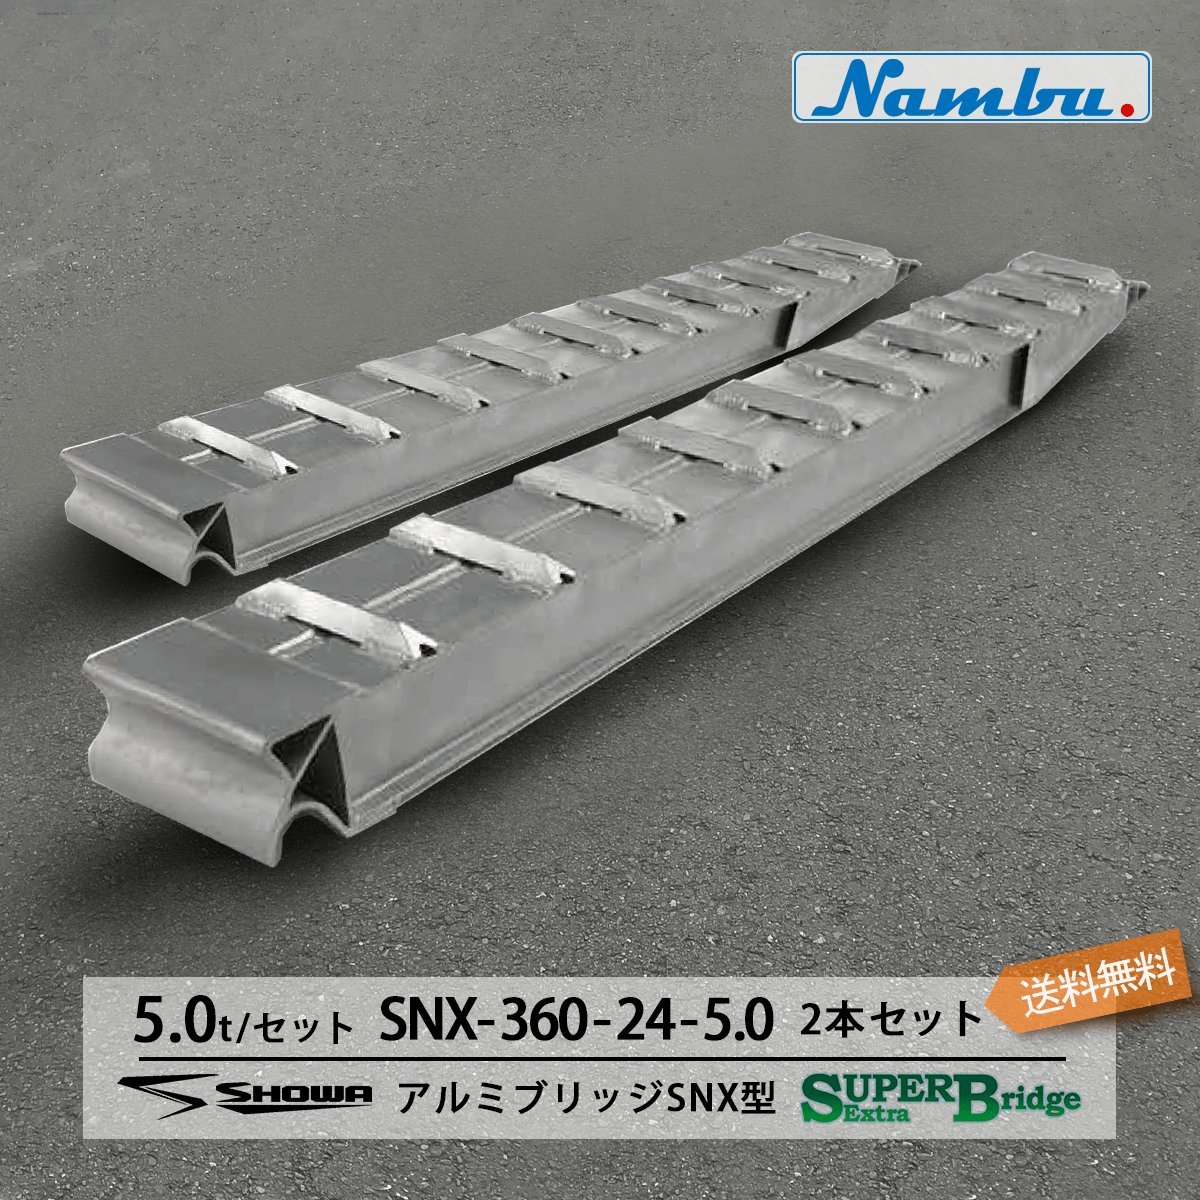 昭和アルミブリッジ SXN-360-24-5.0 5.0t(5t) ツメ式 全長3600/有効幅240(mm) 2本 組